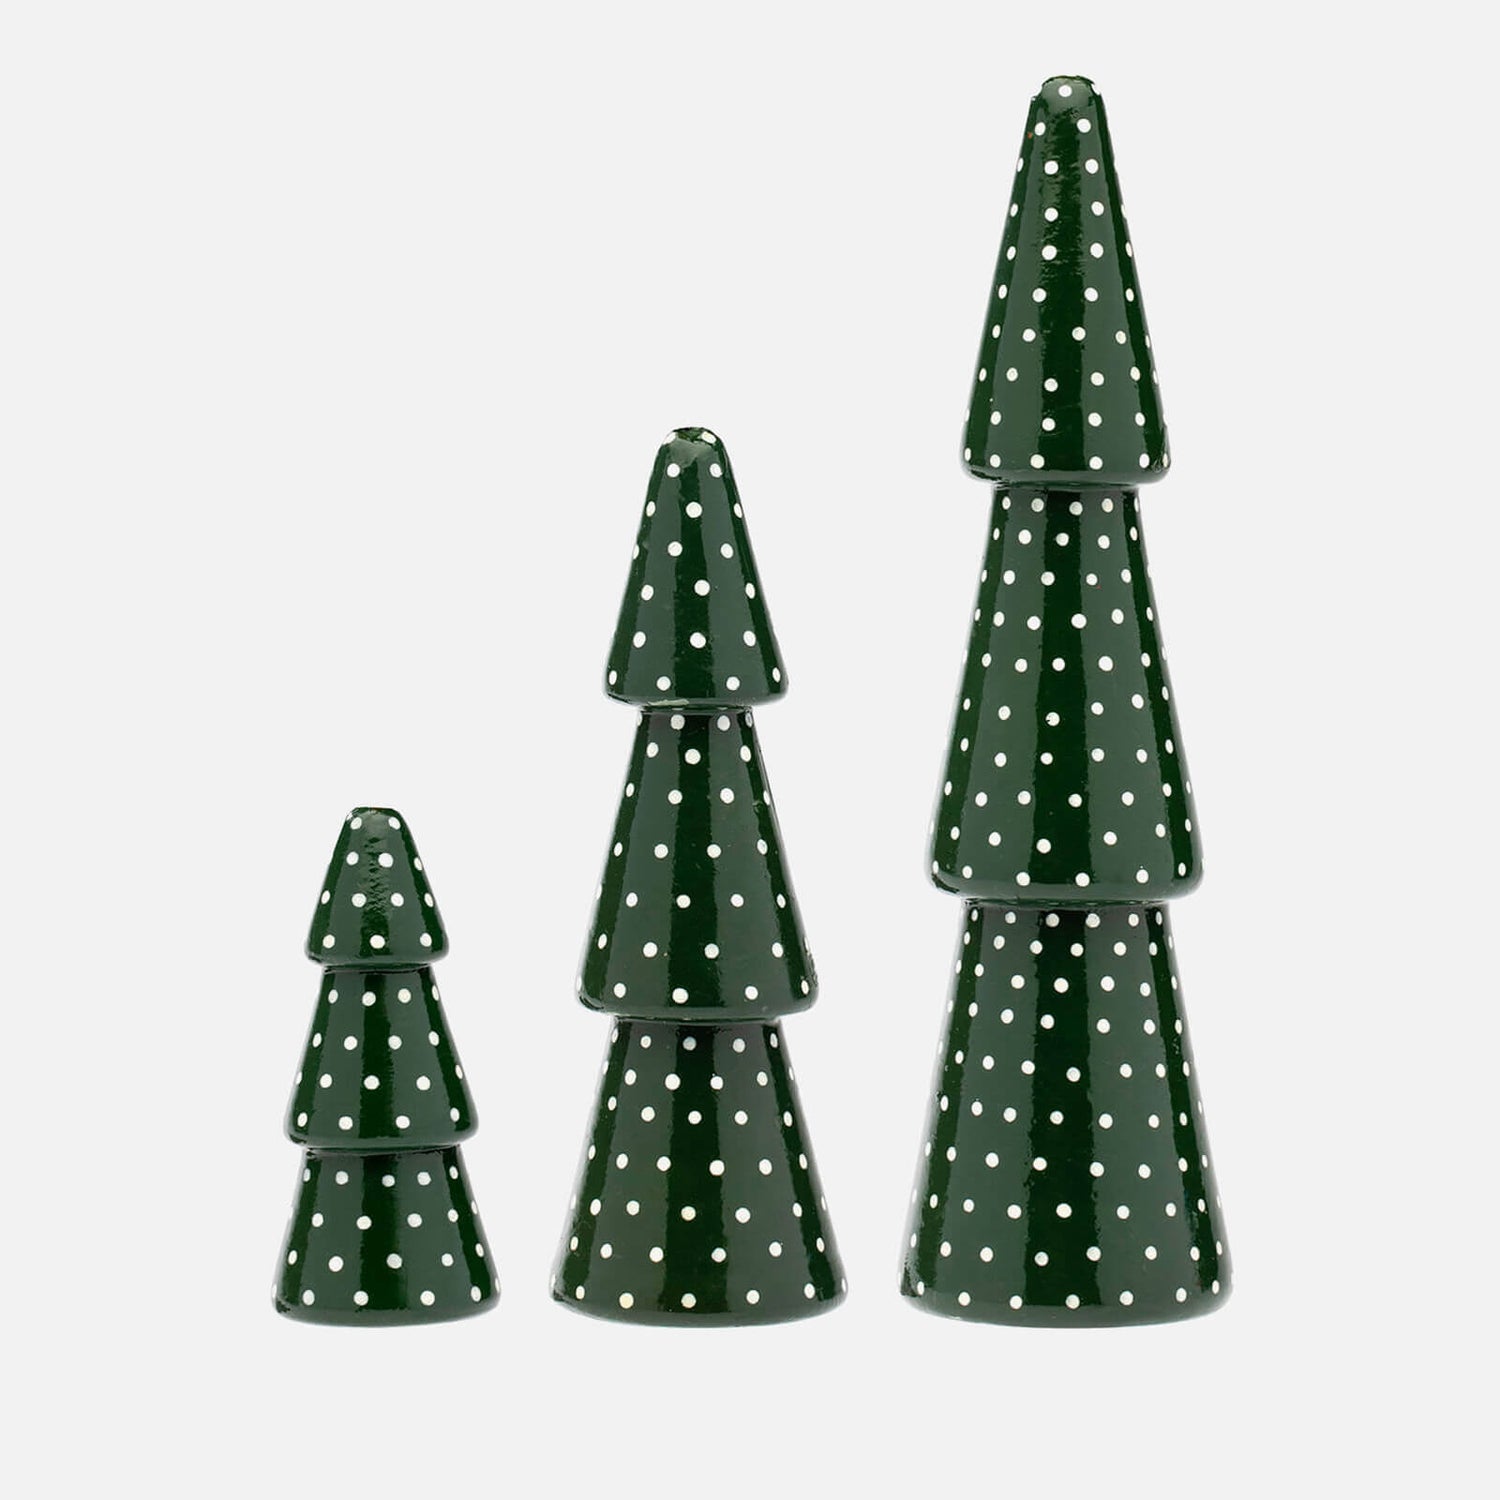 anna + nina Christmas Tree Ornaments - Set of 3